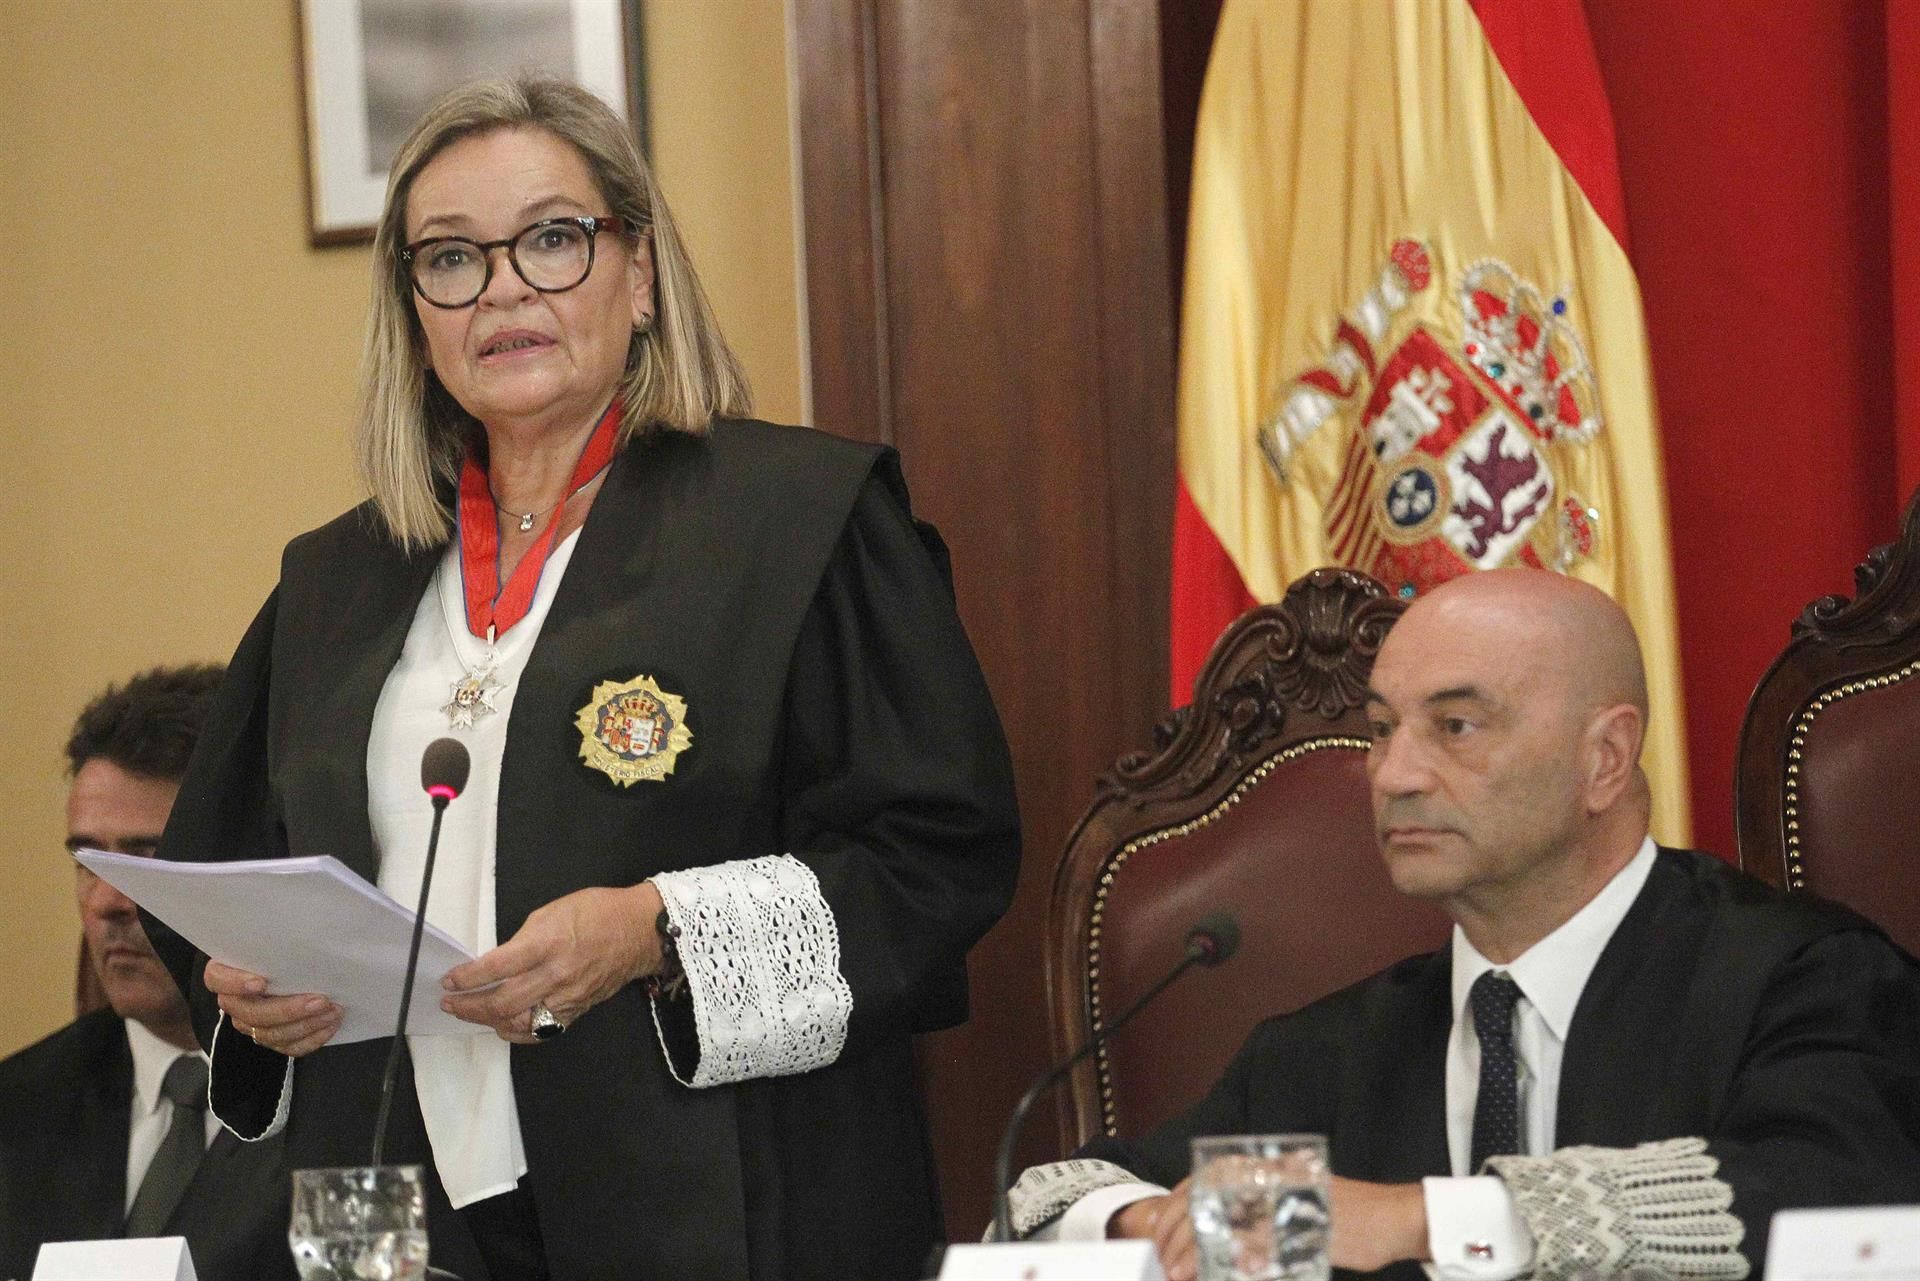 Foto de archivo de la fiscal jefe de Santa Cruz de Tenerife, María Farnés Martínez, elegida nueva fiscal superior de Canarias. EFE/Cristóbal García